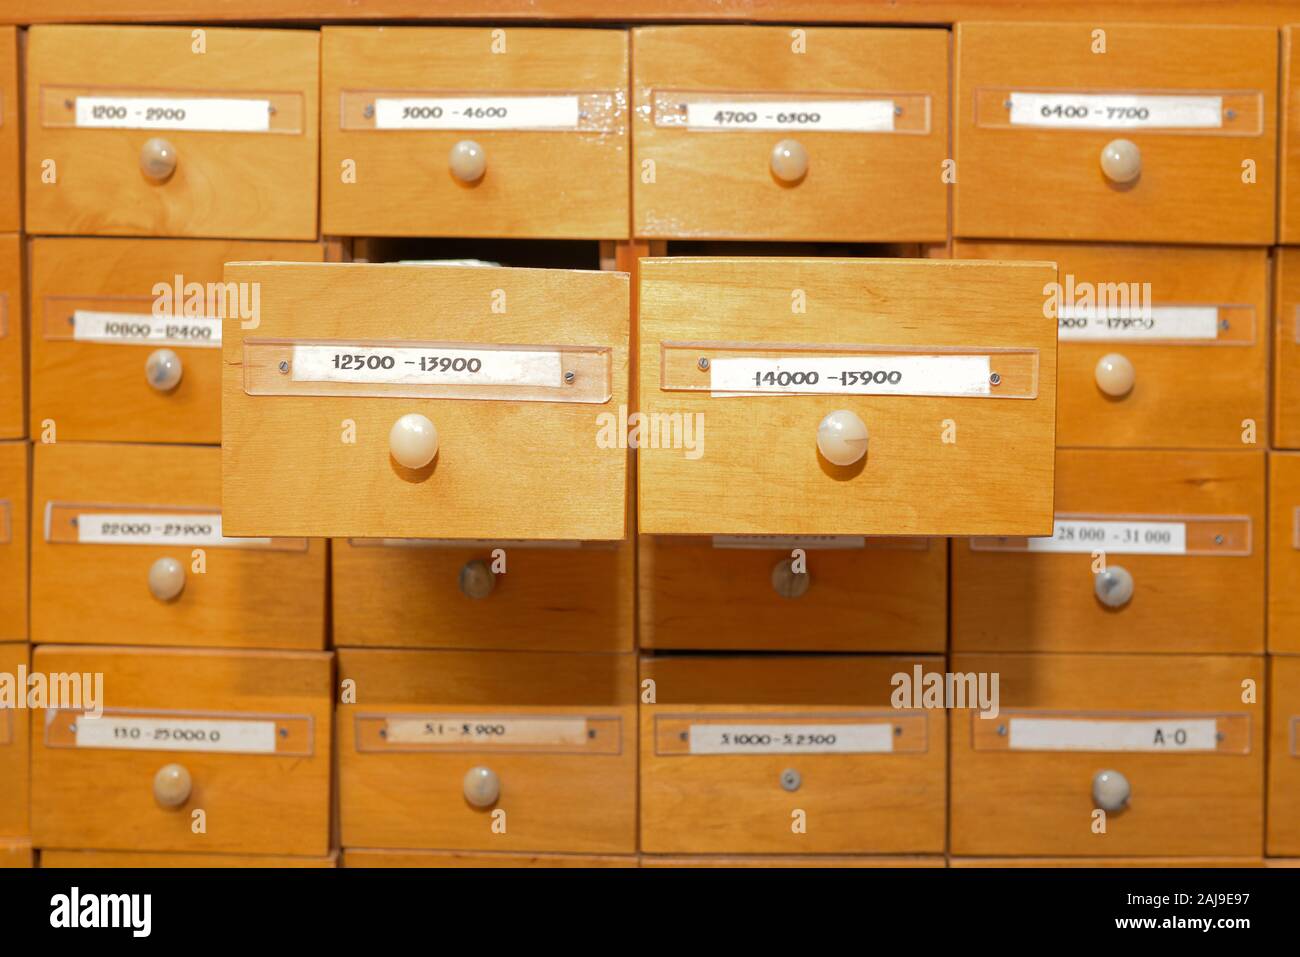 Database e directory dei dati. Un armadietto in una libreria con cassetti per riporre le schede di informazioni. Prenota il sistema contabile in una libreria o una scuola. Ricerca di Foto Stock